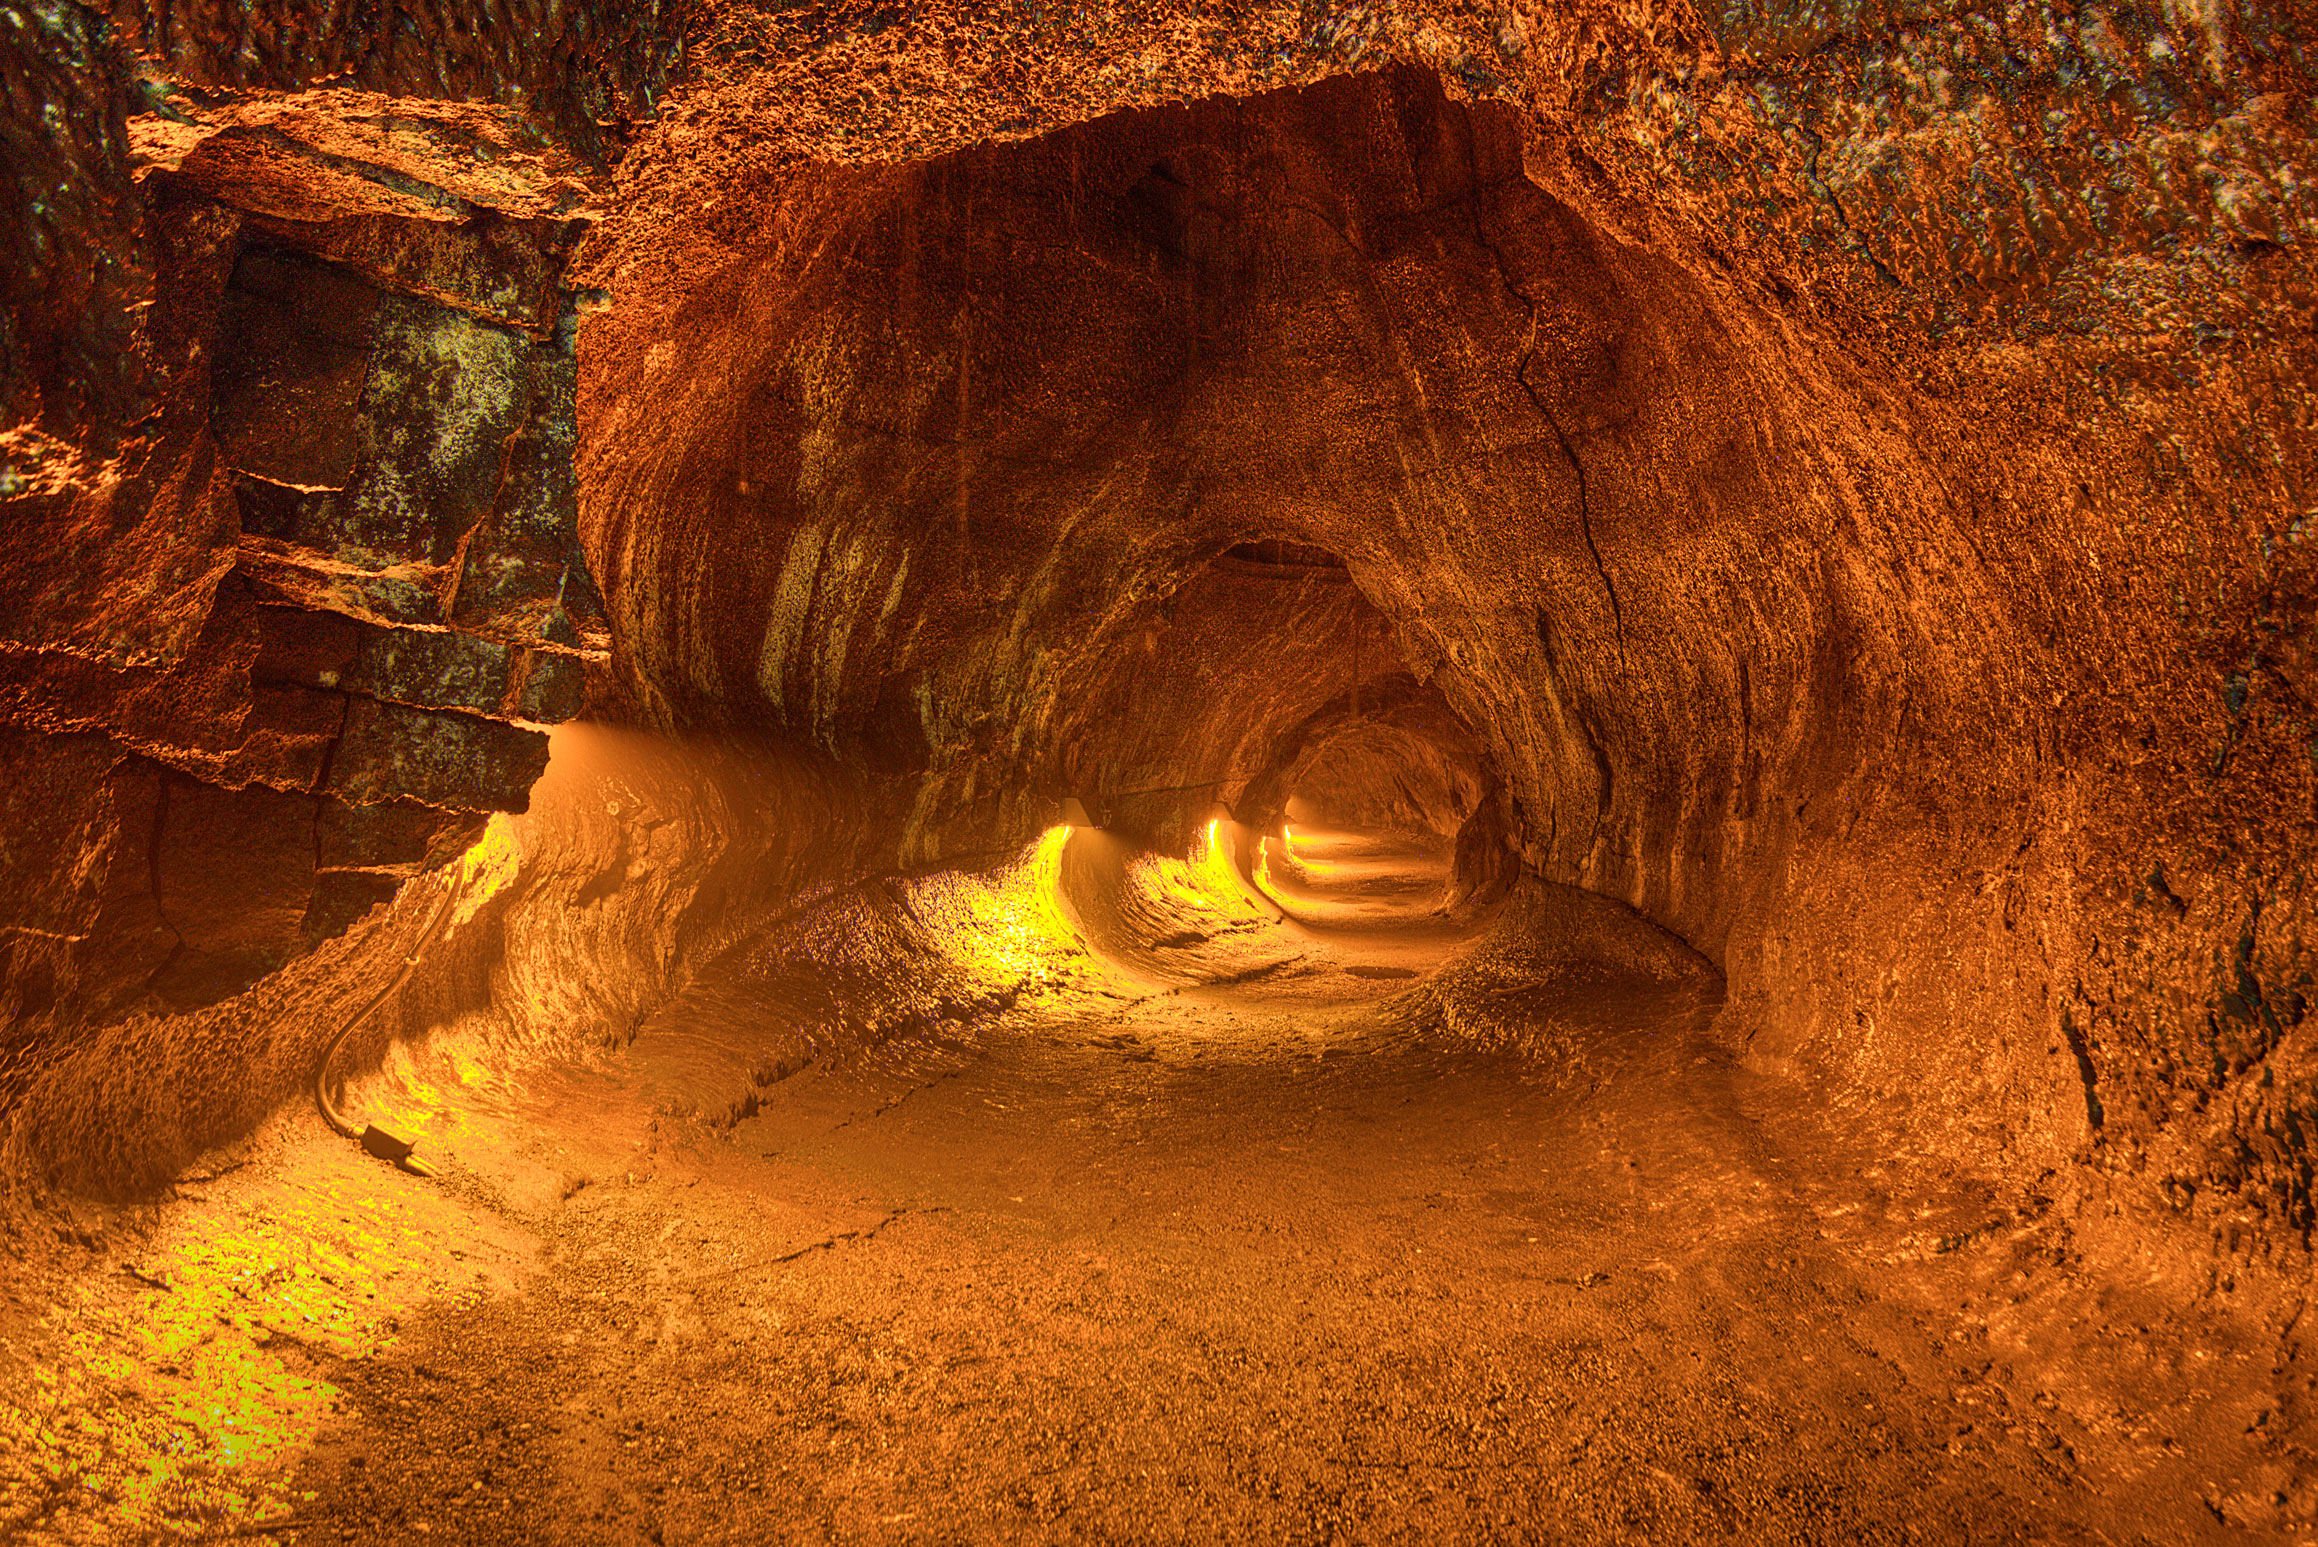 Inside the Thurston Lava Tube in Hawaii Volcanoes National Park